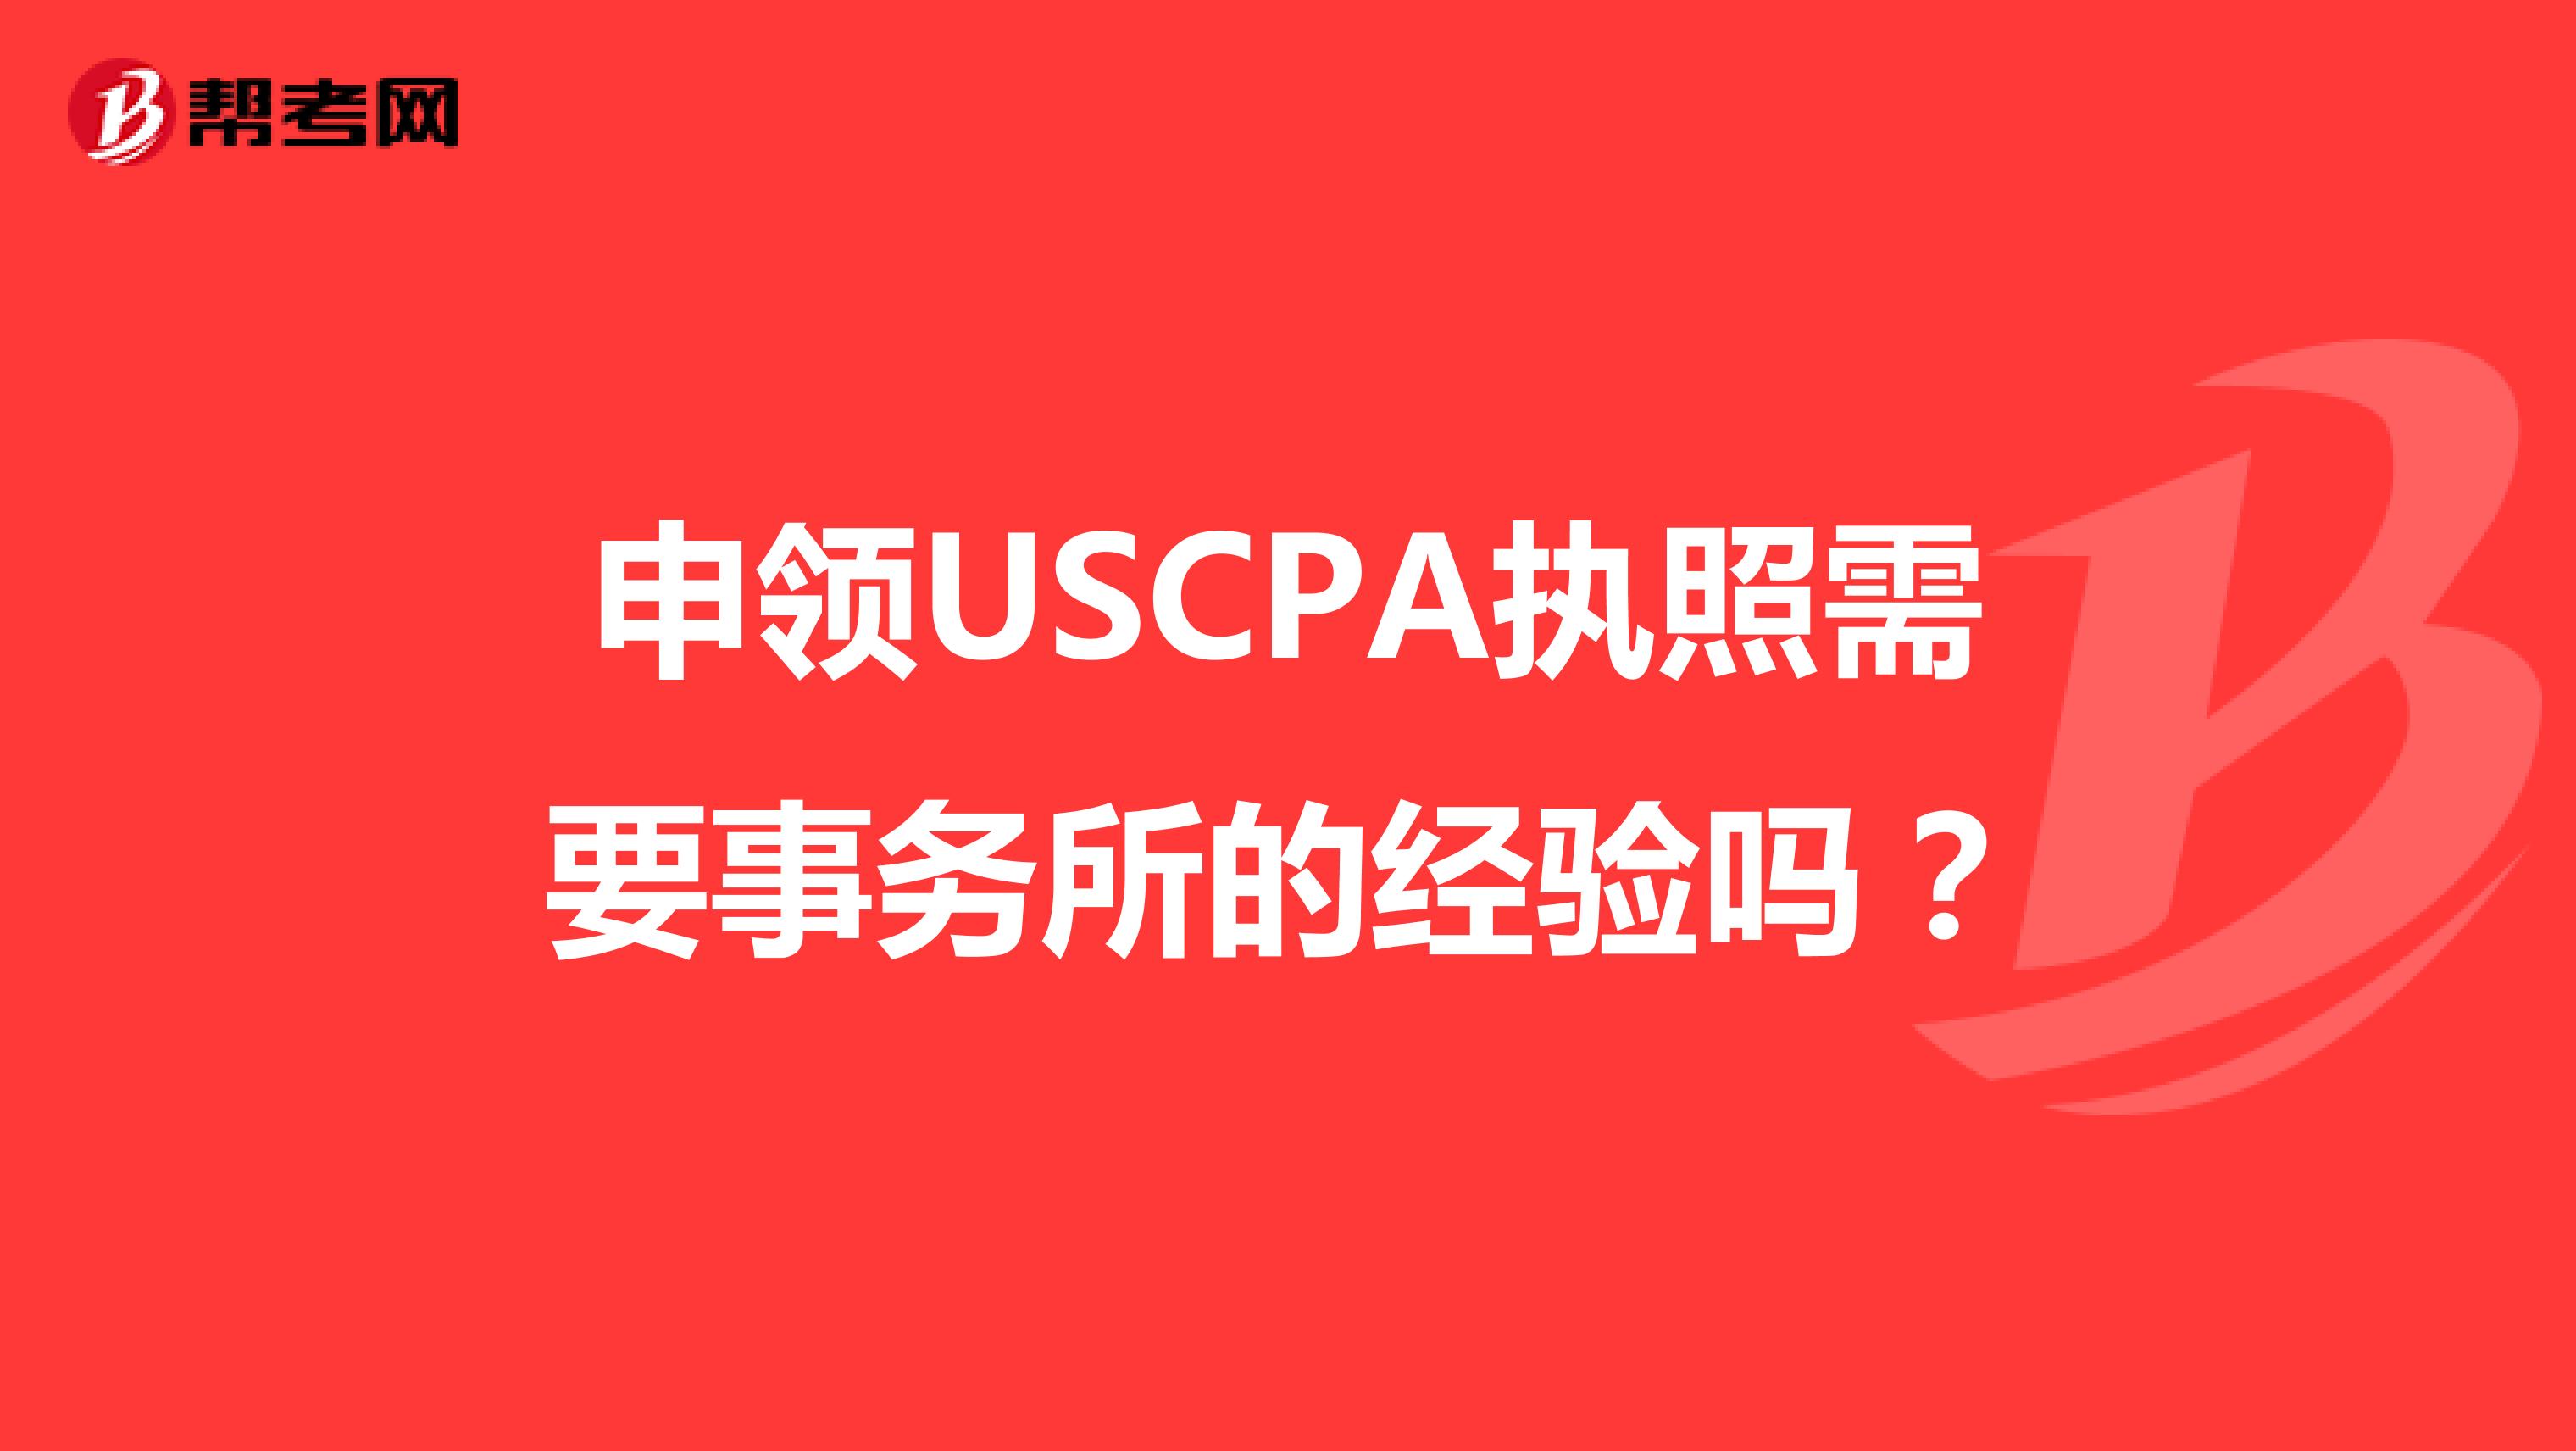 申领USCPA执照需要事务所的经验吗？